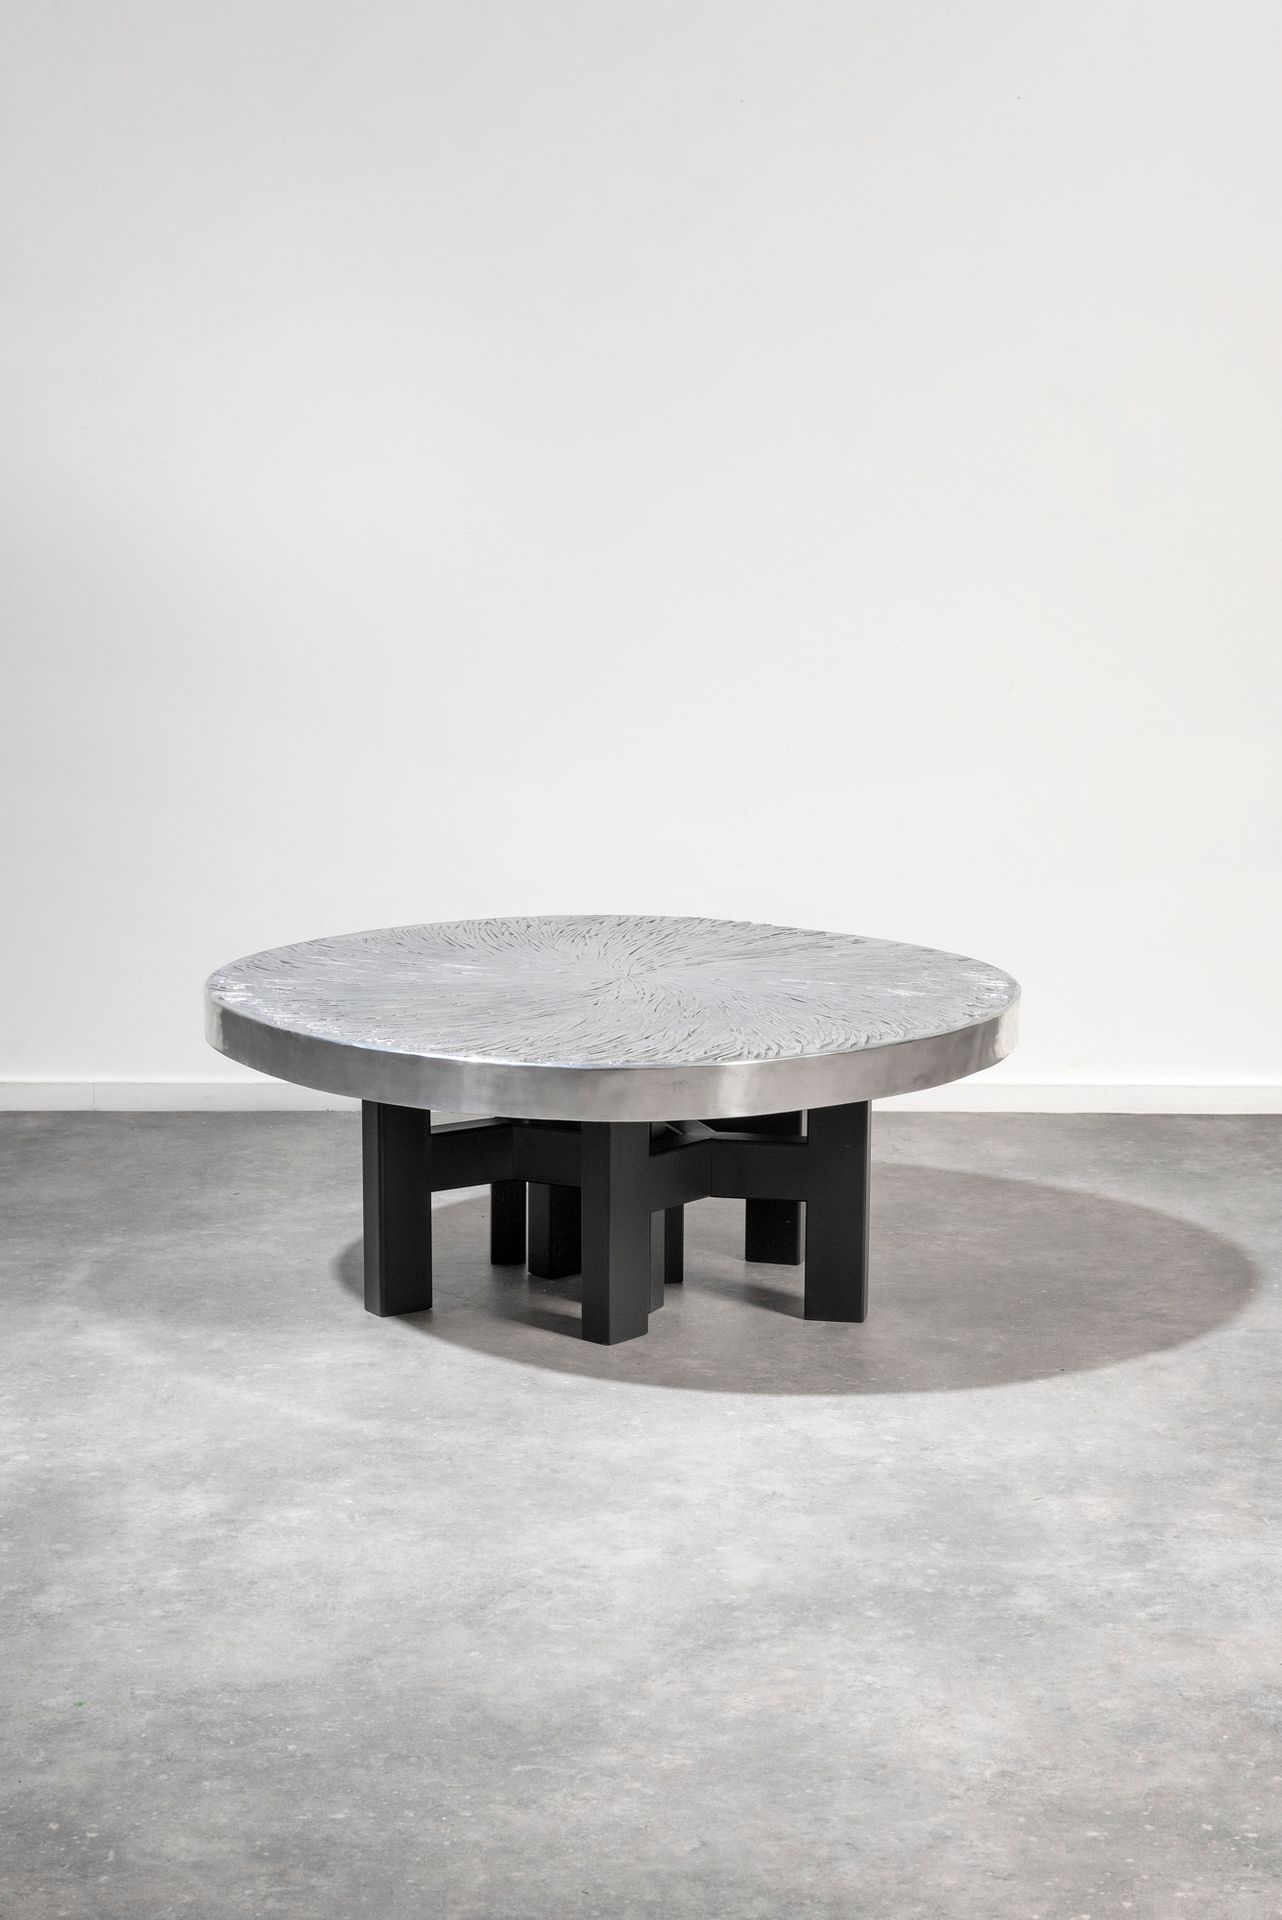 Ado CHALE (né en 1928) Copeaux
咖啡桌
铸铝桌面，置于三条黑色漆面钢制的三脚架腿上。
签名。
将向买方提供一份证书。
Salont&hellip;